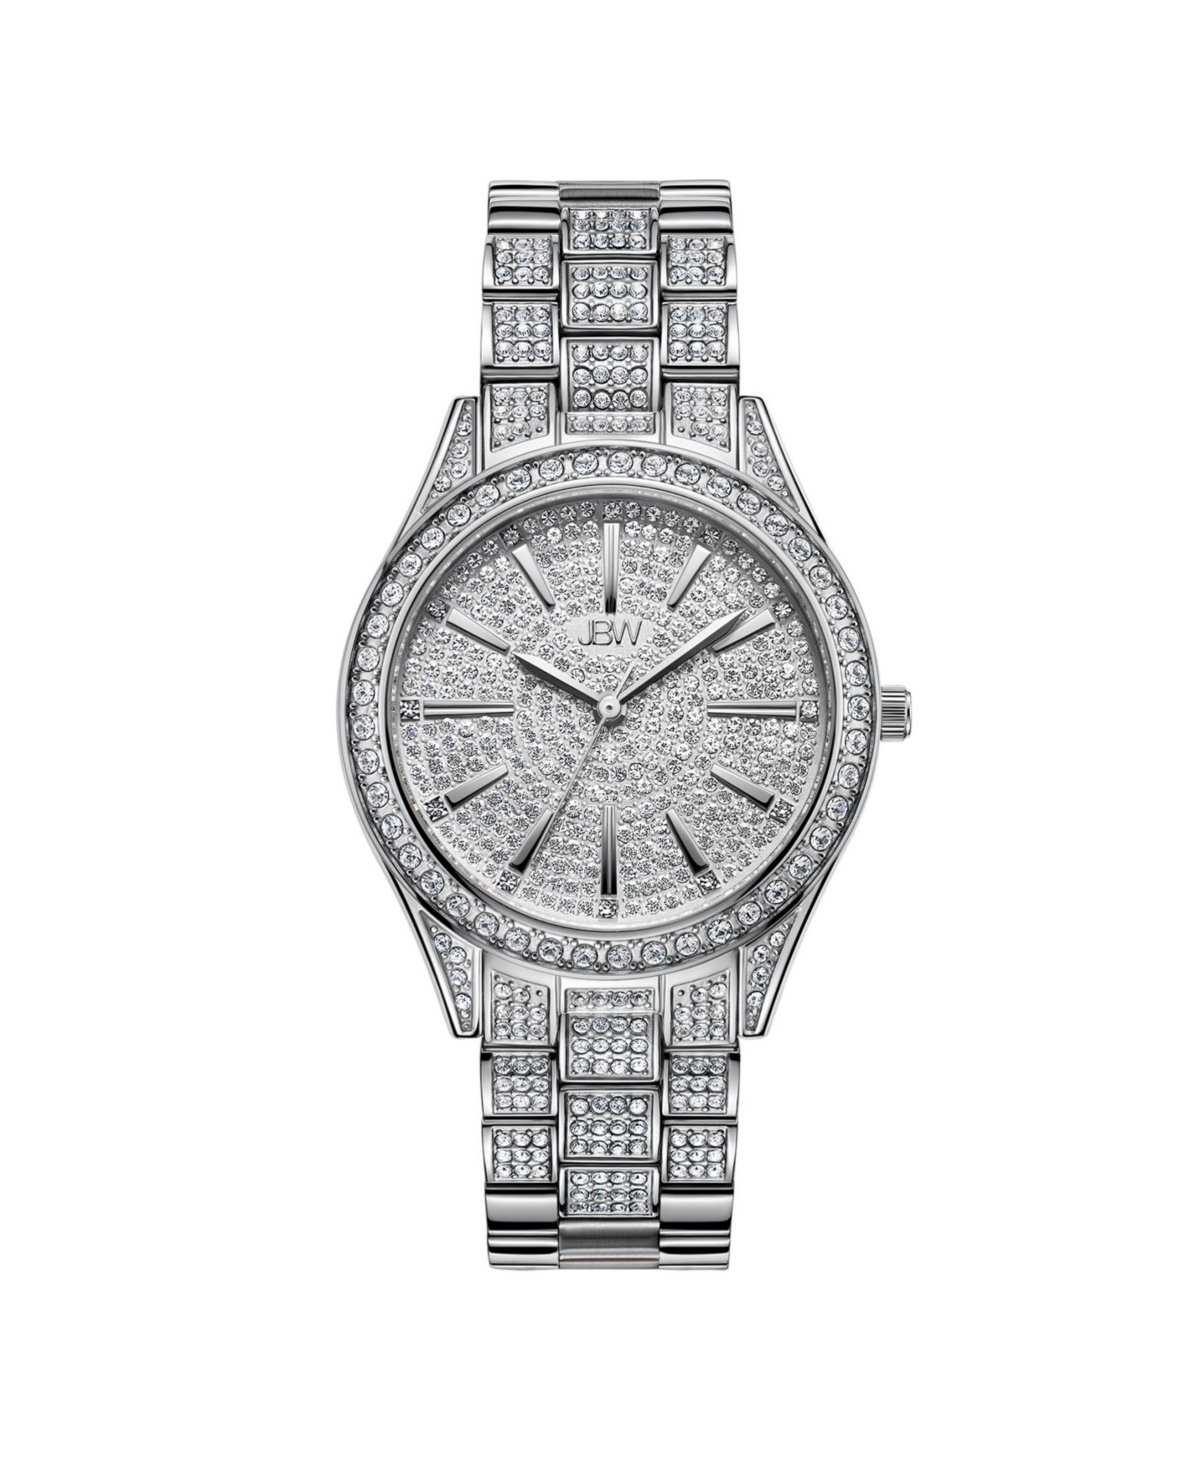 Women's Cristal Diamond (1/8 ct. t.w.) Watch in Stainless Steel Watch 38mm - Silver